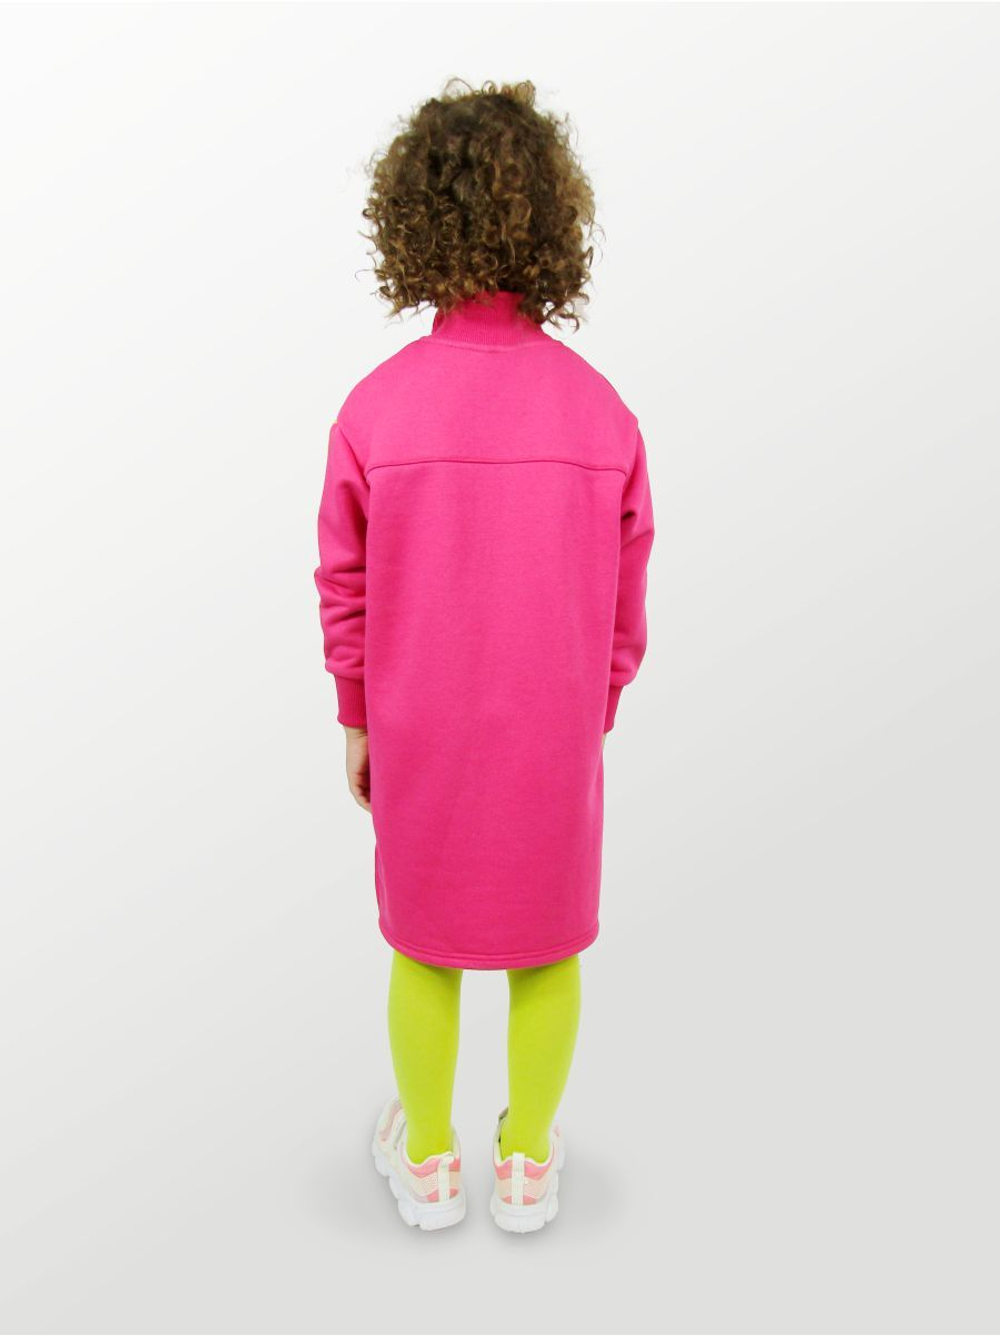 Платье для девочки, модель №1, рост 104 см, фуксия